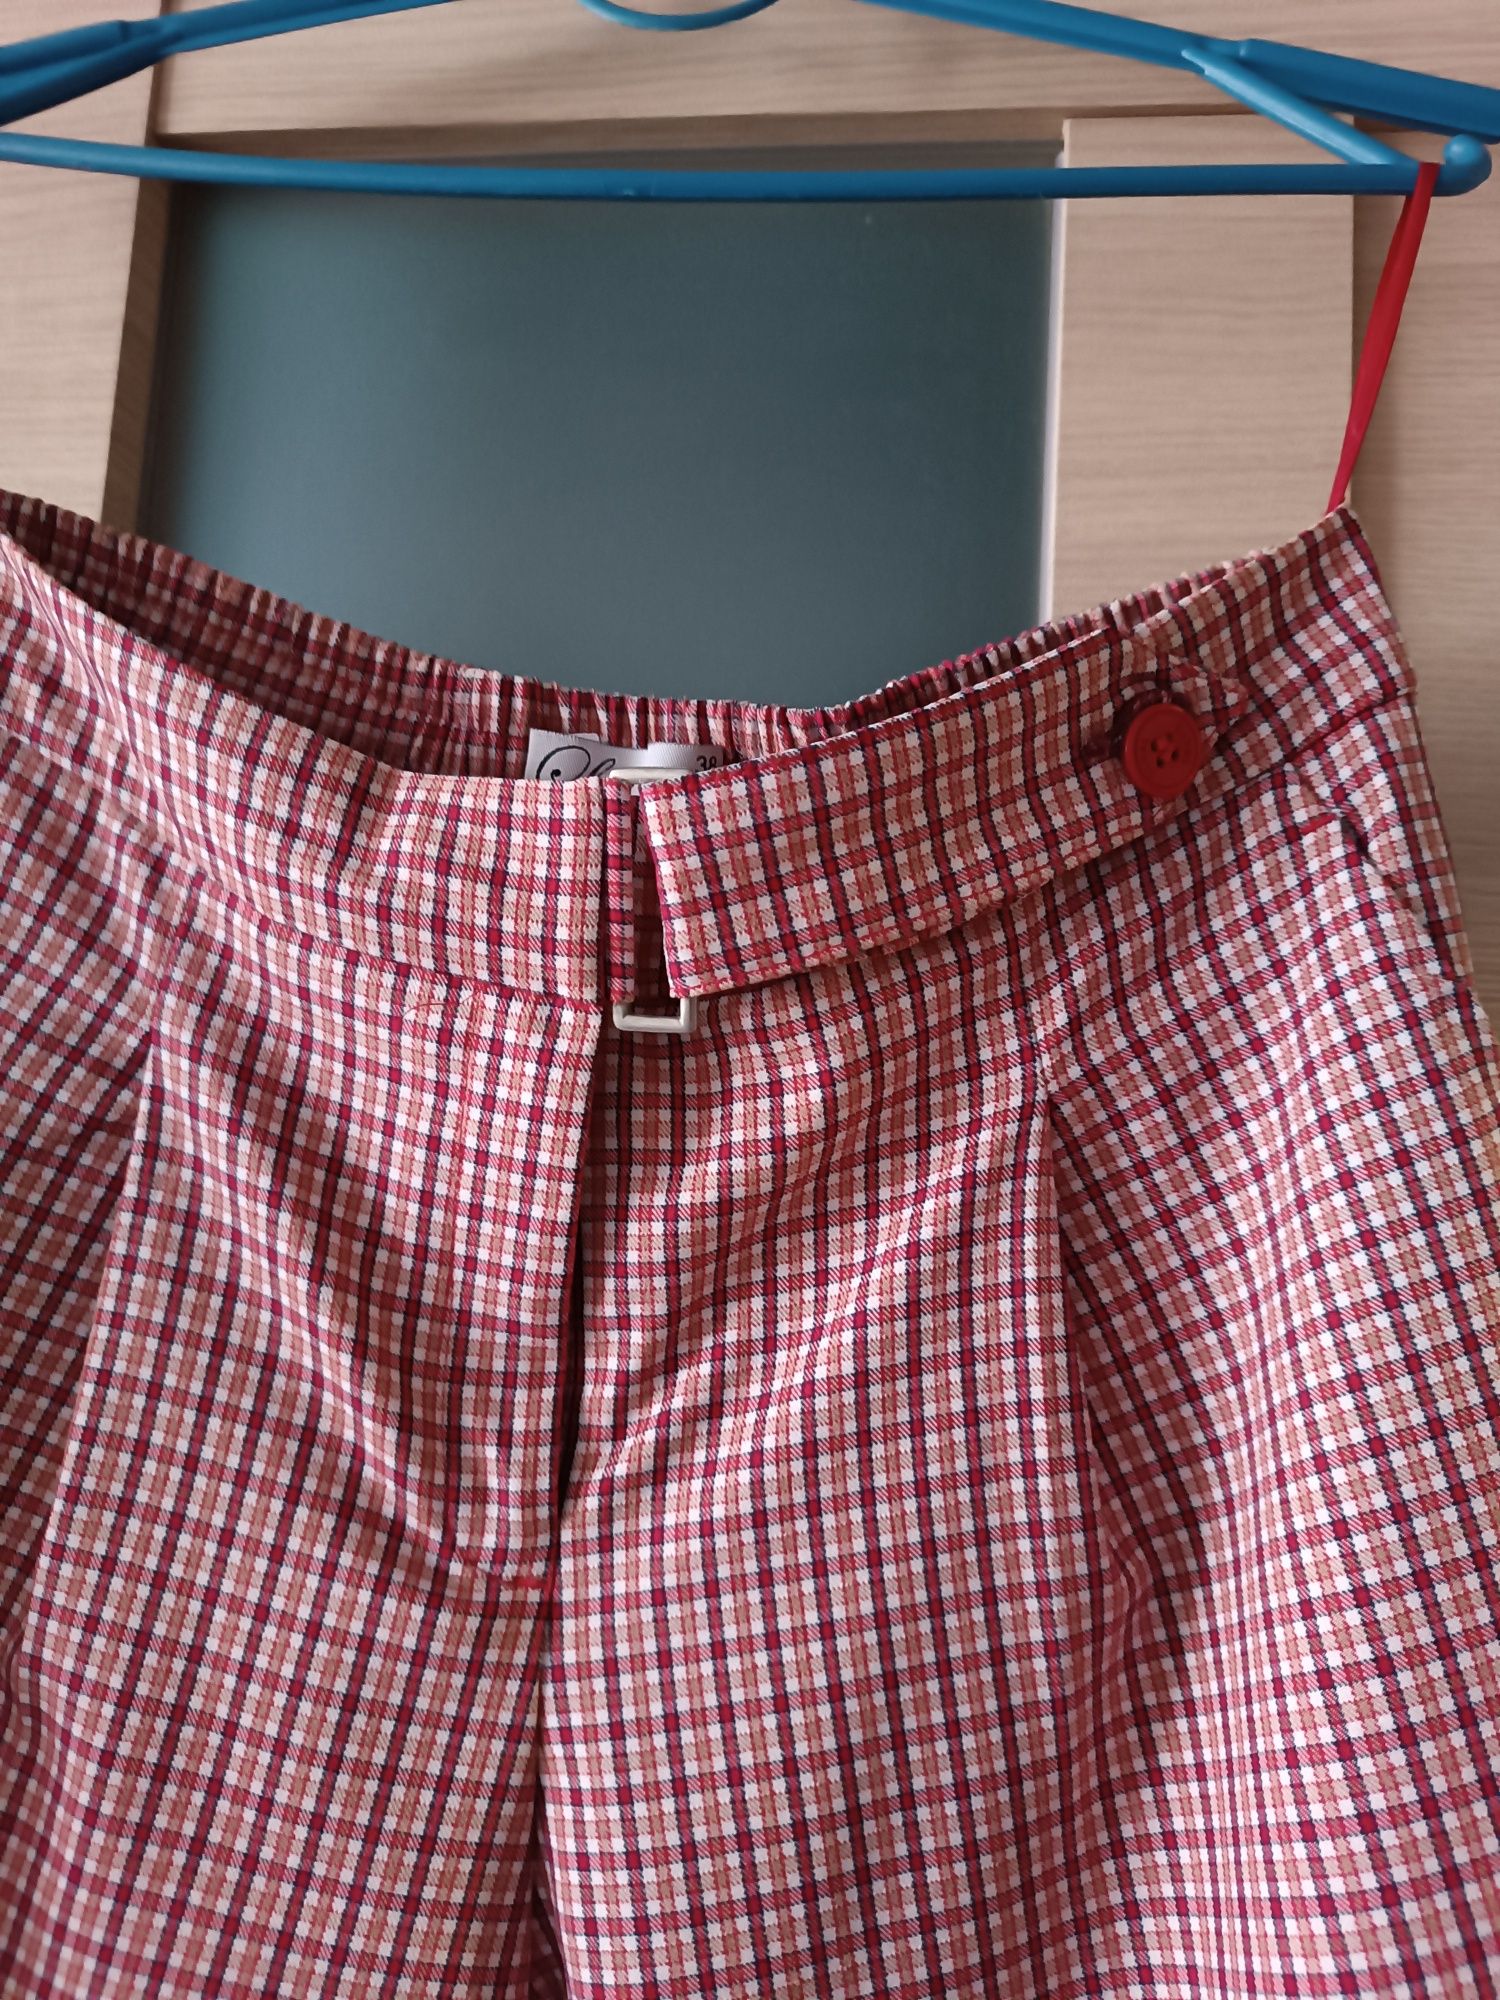 Літні брюки та костюма в клітинку 46-48 р можливо на вагітну